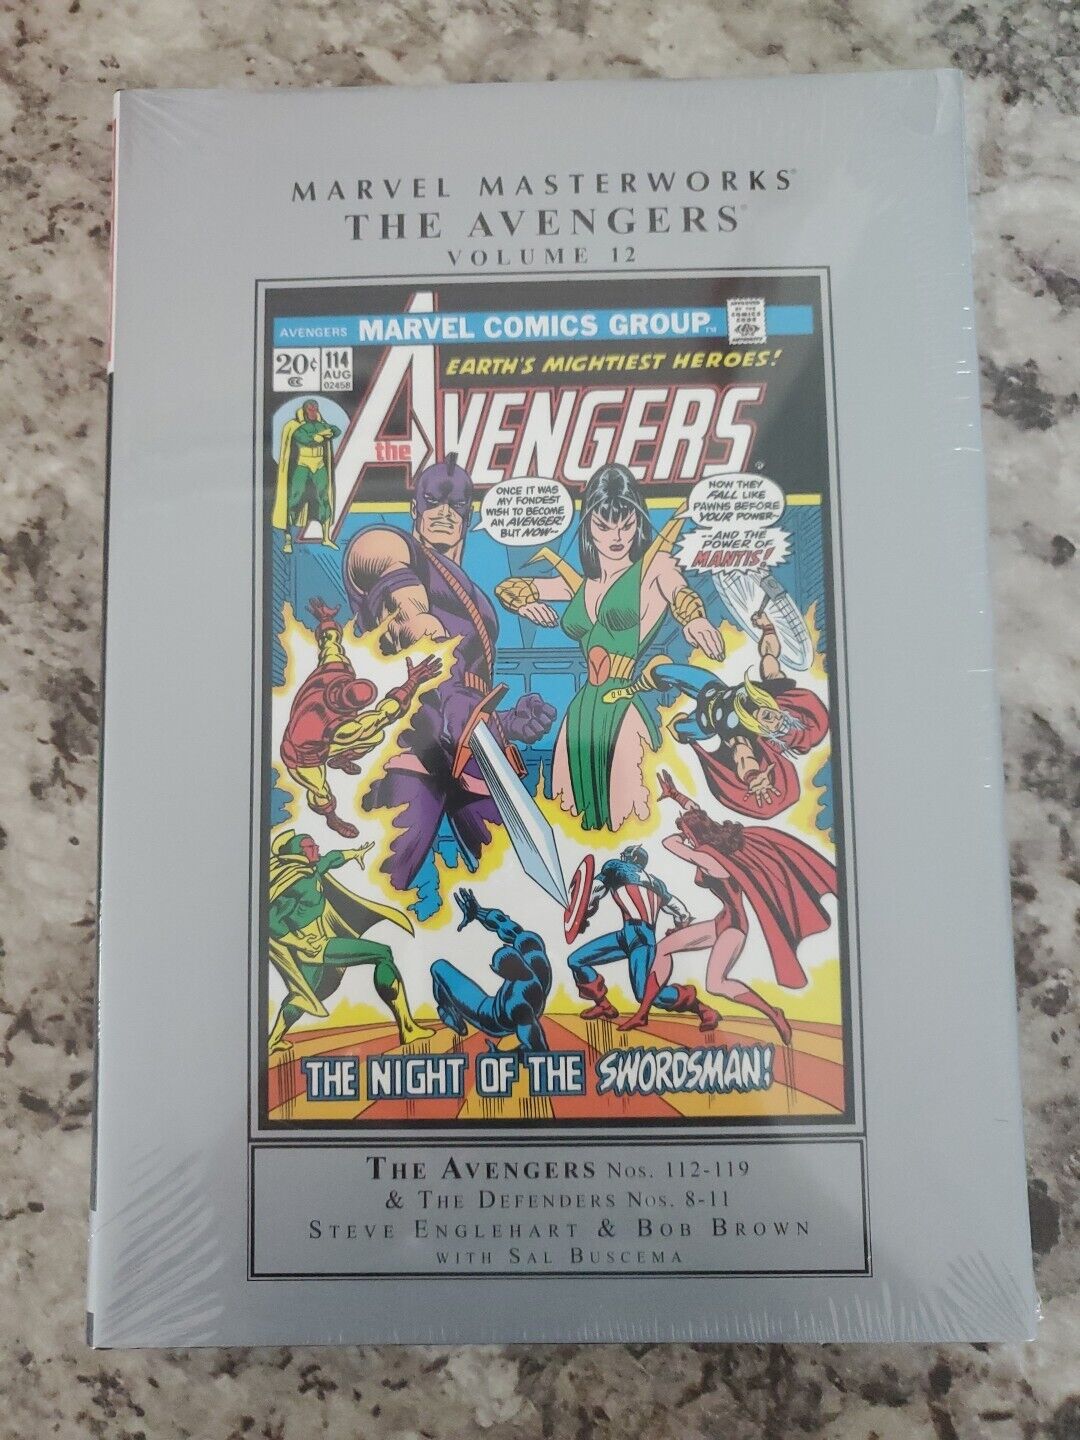 Marvel Masterworks The Avengers Volume 12 Brand New Sealed Comics